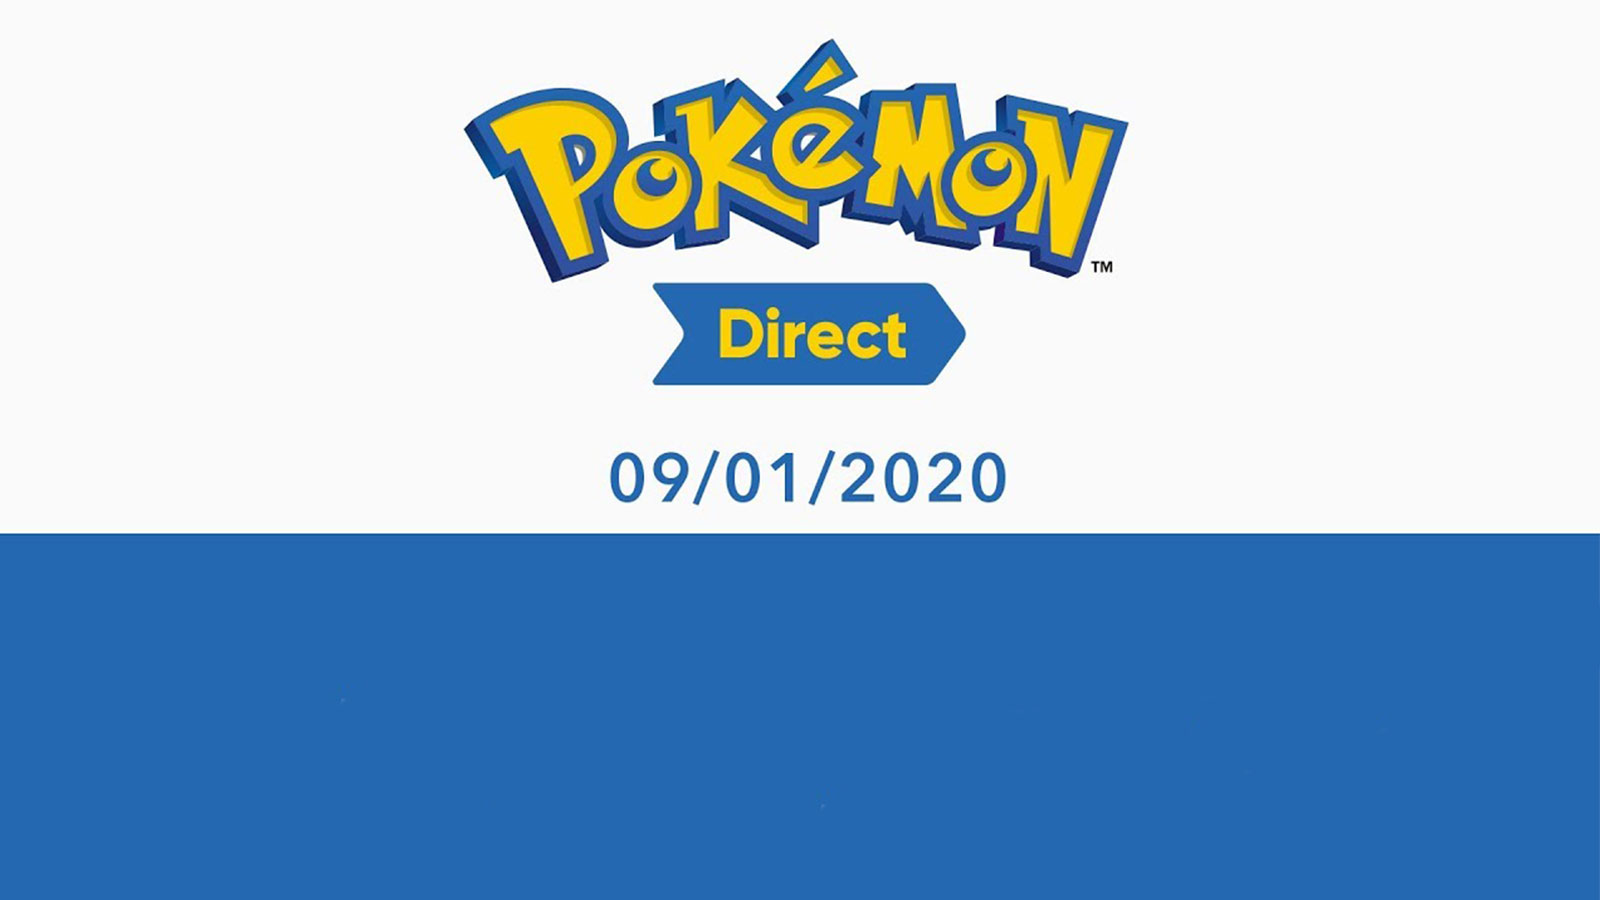 Pokémon Direct comment assister au live ? Dexerto.fr